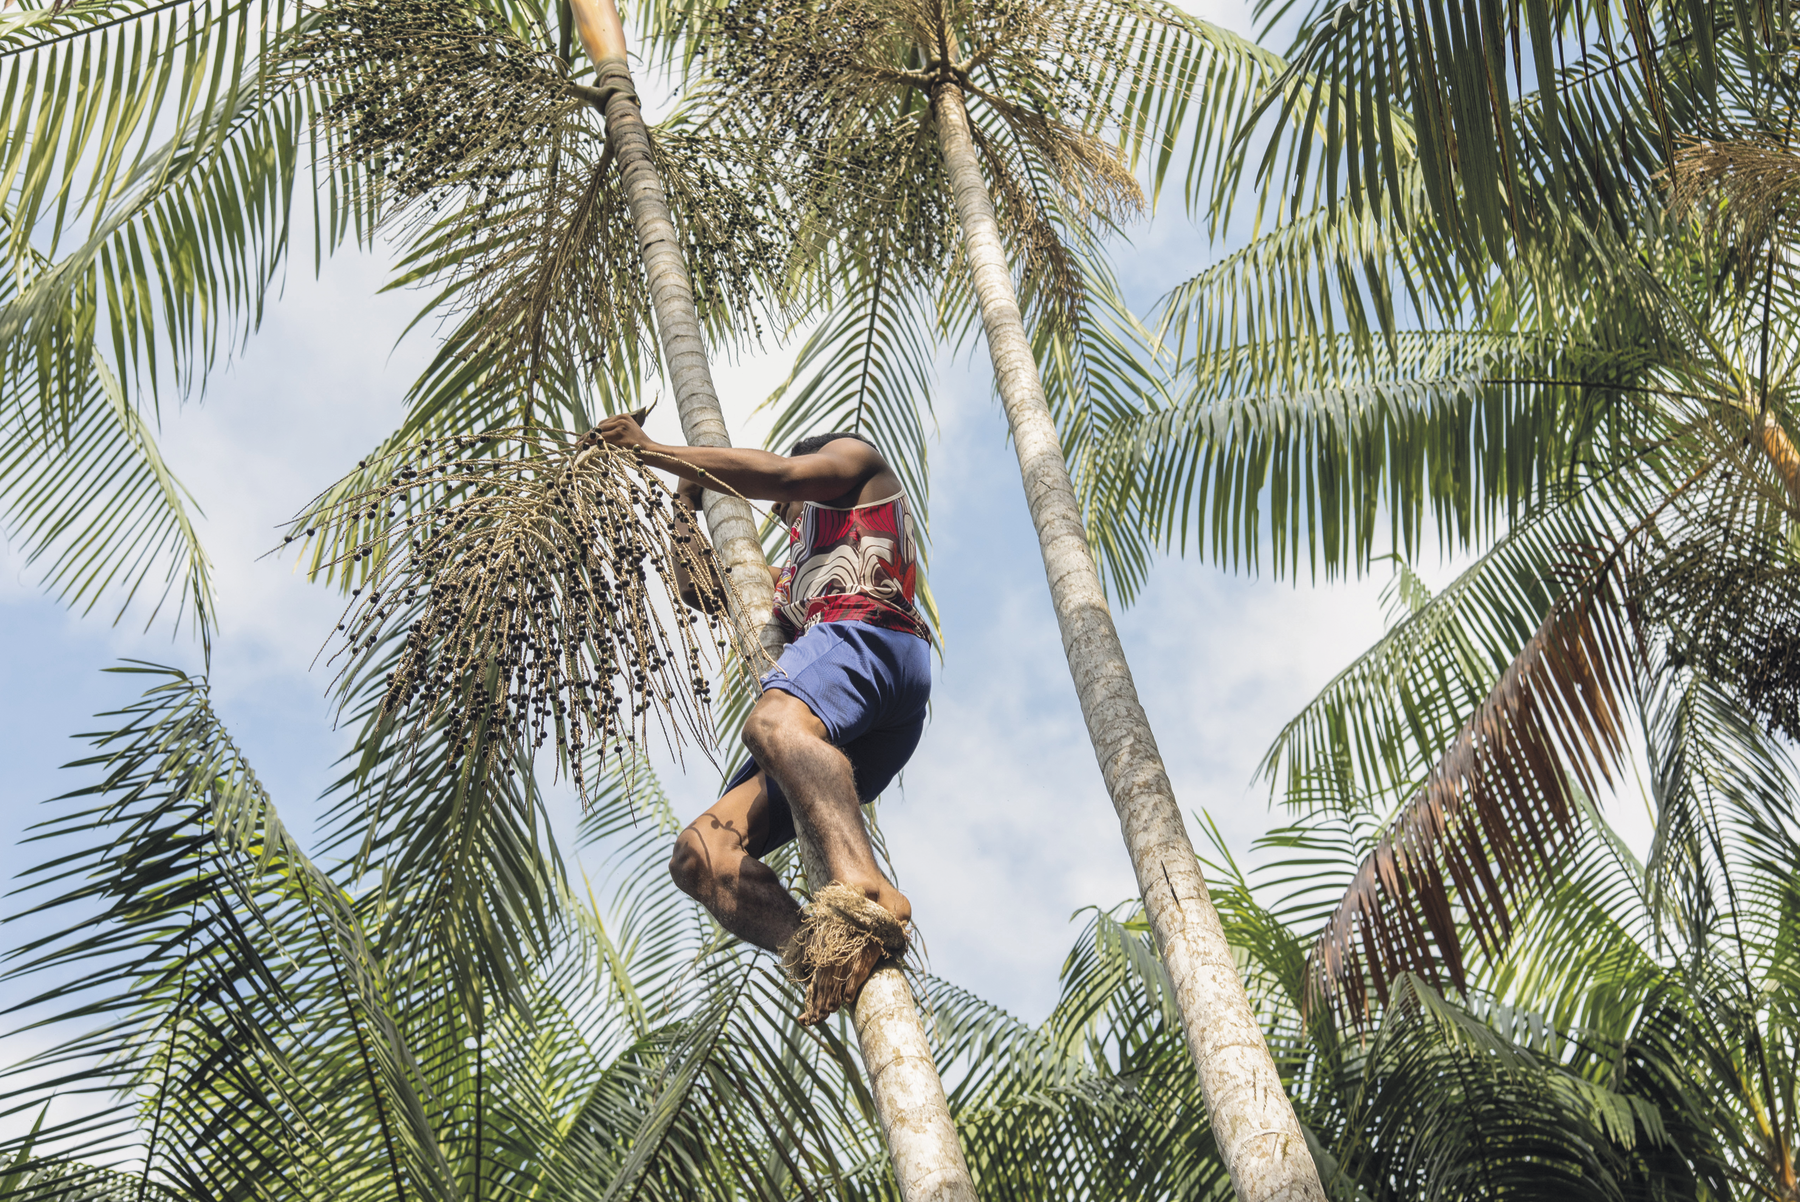 Fotografia. Um homem escalando uma palmeira-açaí. Há palha amarrada em seus pés e ele segura um galho com açaís.